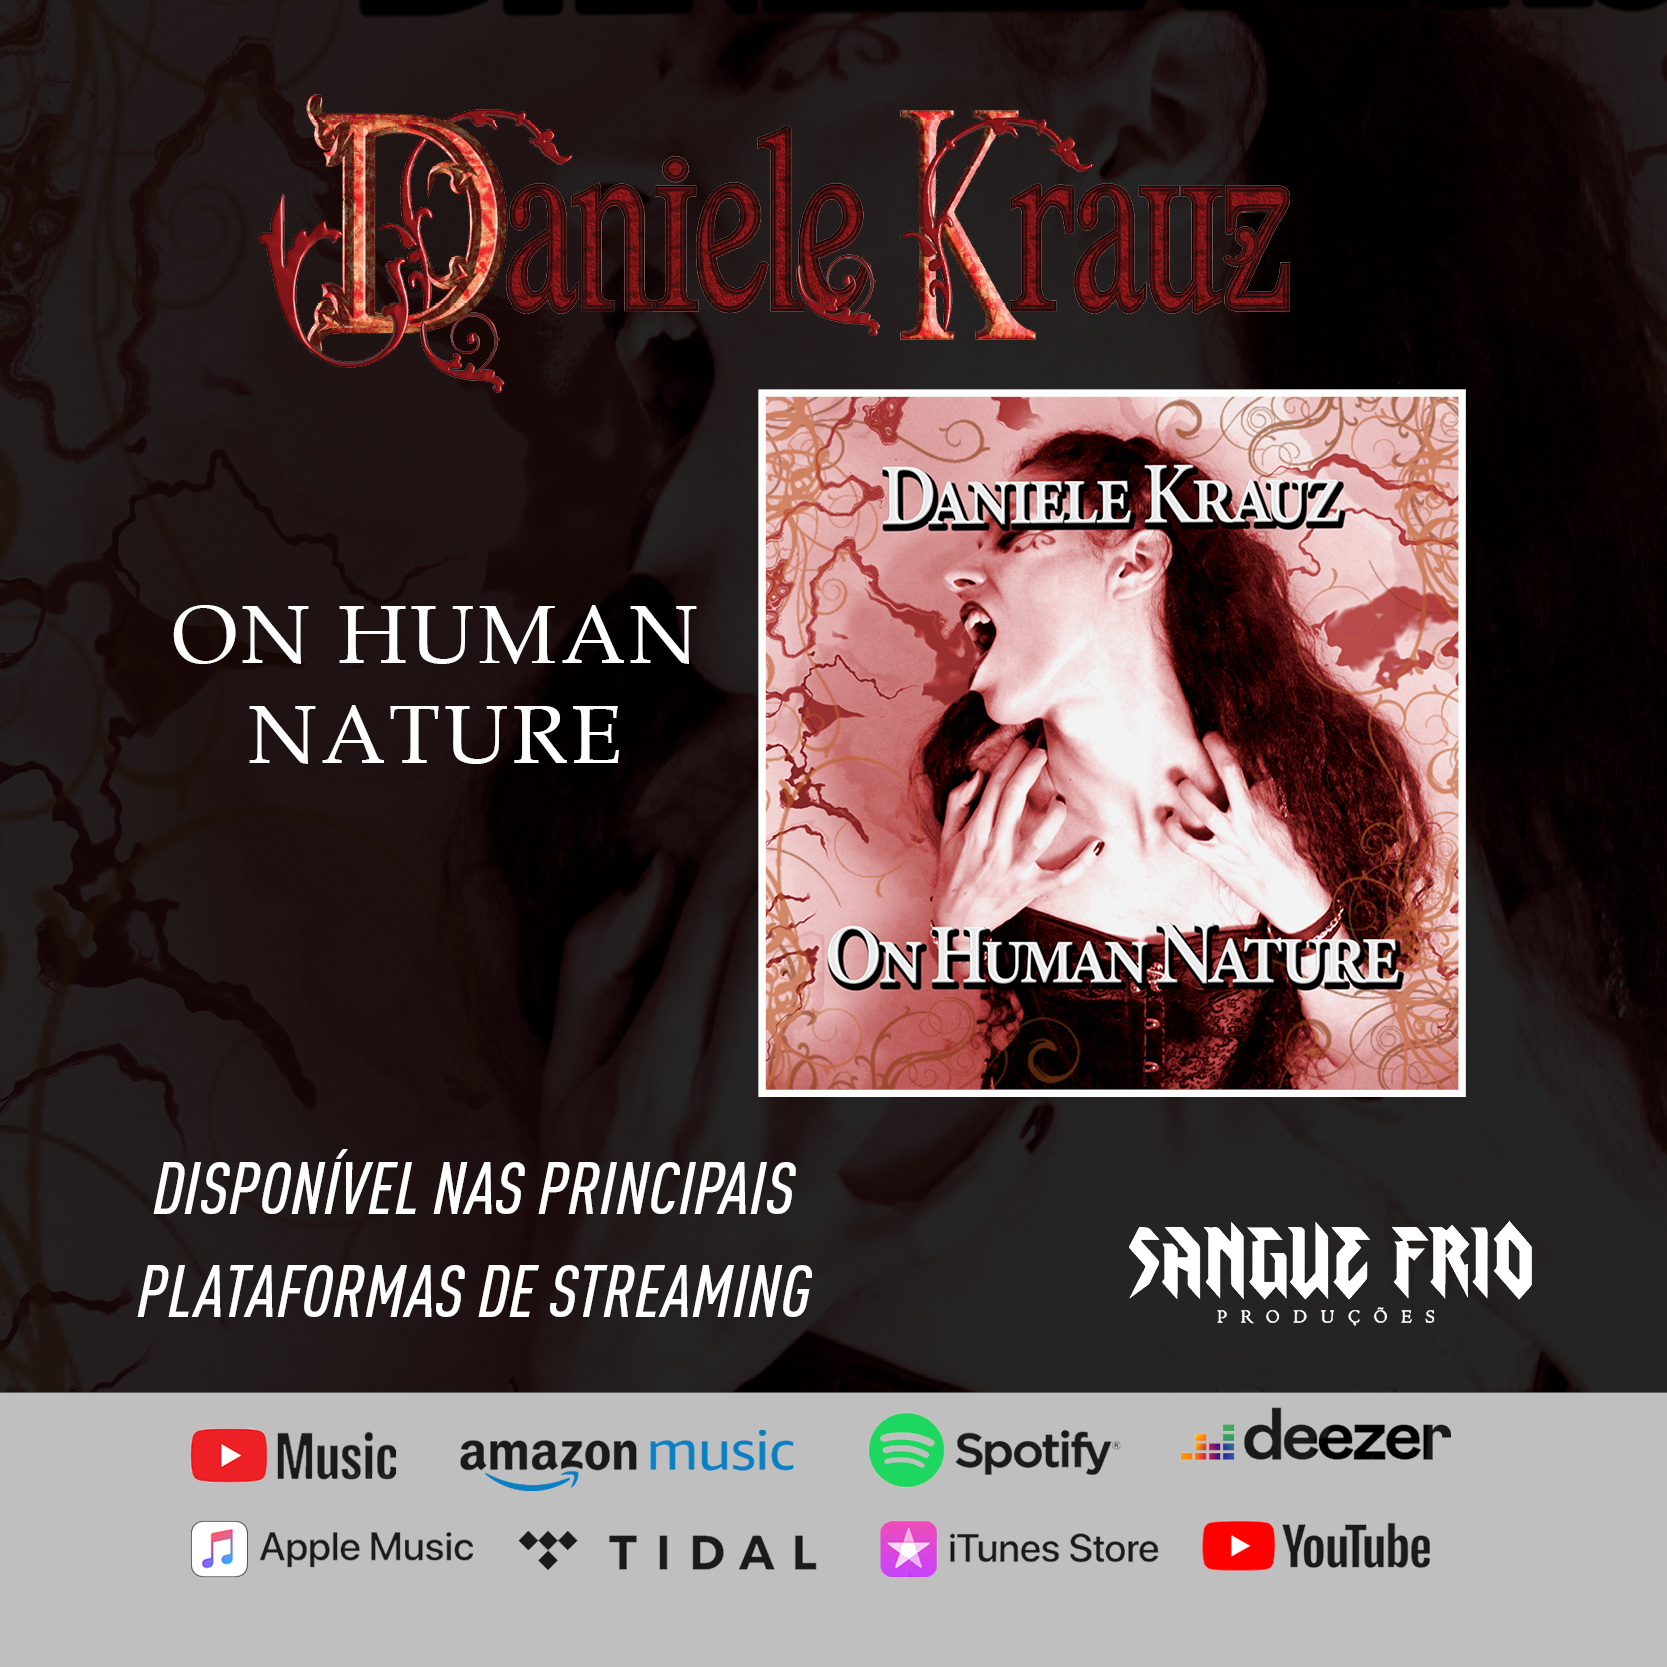 DANIELE KRAUZ: Clique aqui e ouça agora o atual álbum “On Human Nature”!